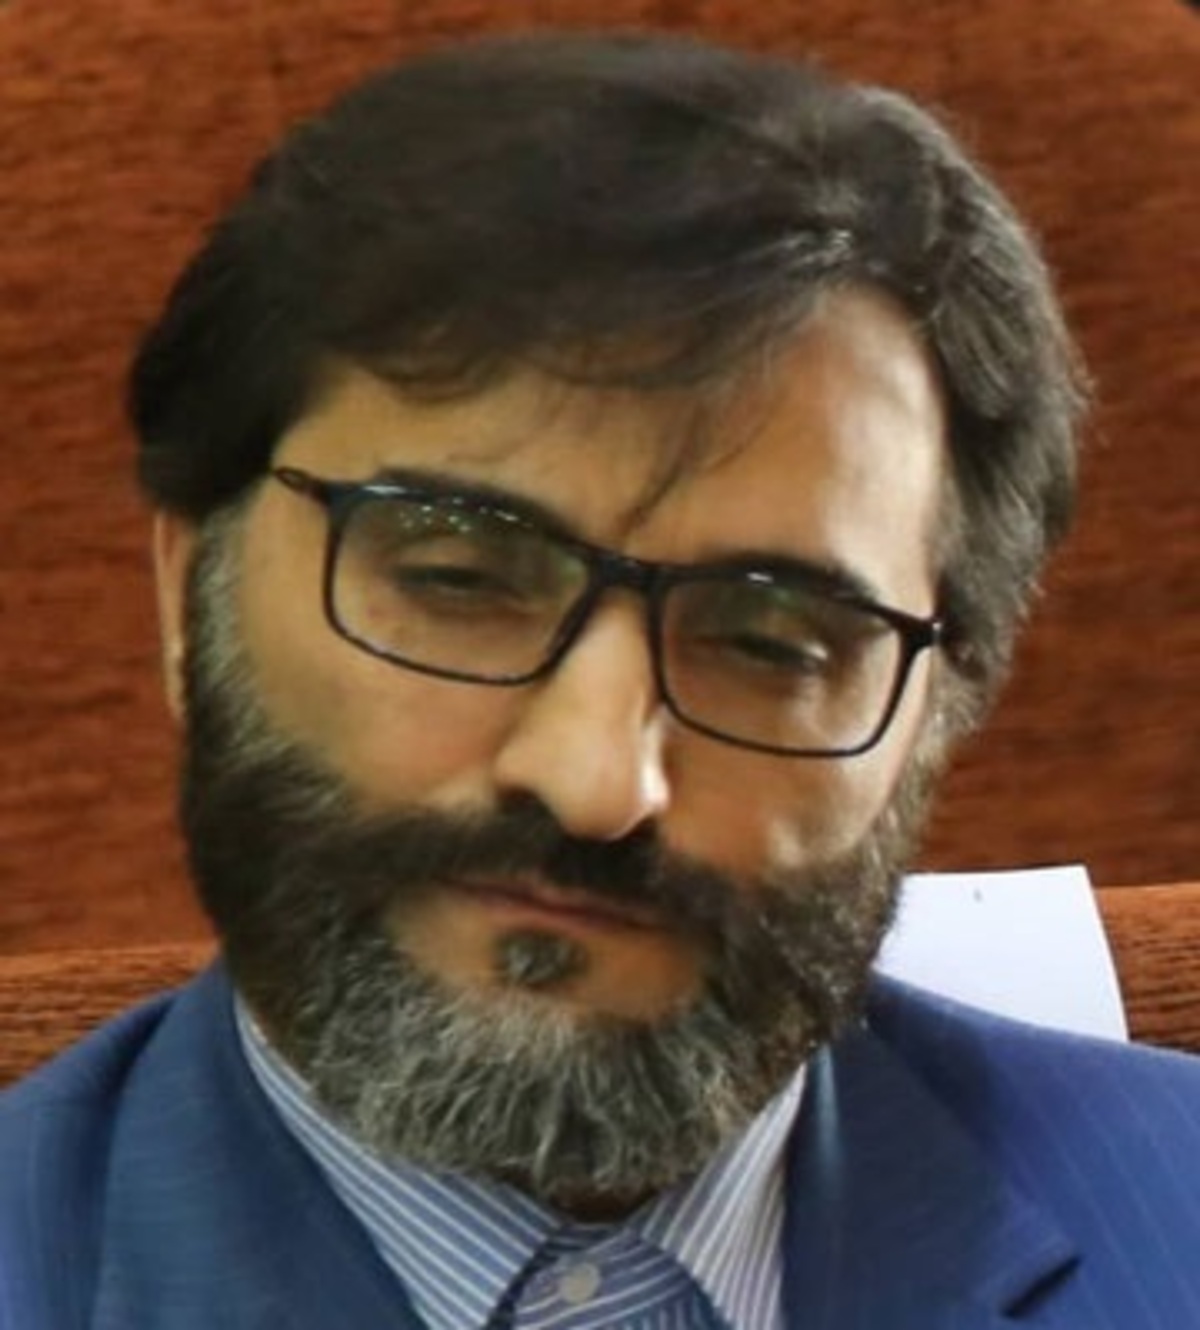 دکتر مجید سجادی پناه با انتشار چند توئیت از شکست ایران در برابر انگلیس و مصادف شدن آن با اغتشاشات اخیر در ایران نتیجه گرفت که انگلیس ها اغتشاشات را برنامه ریزی کردند تا تیمشان ببرد